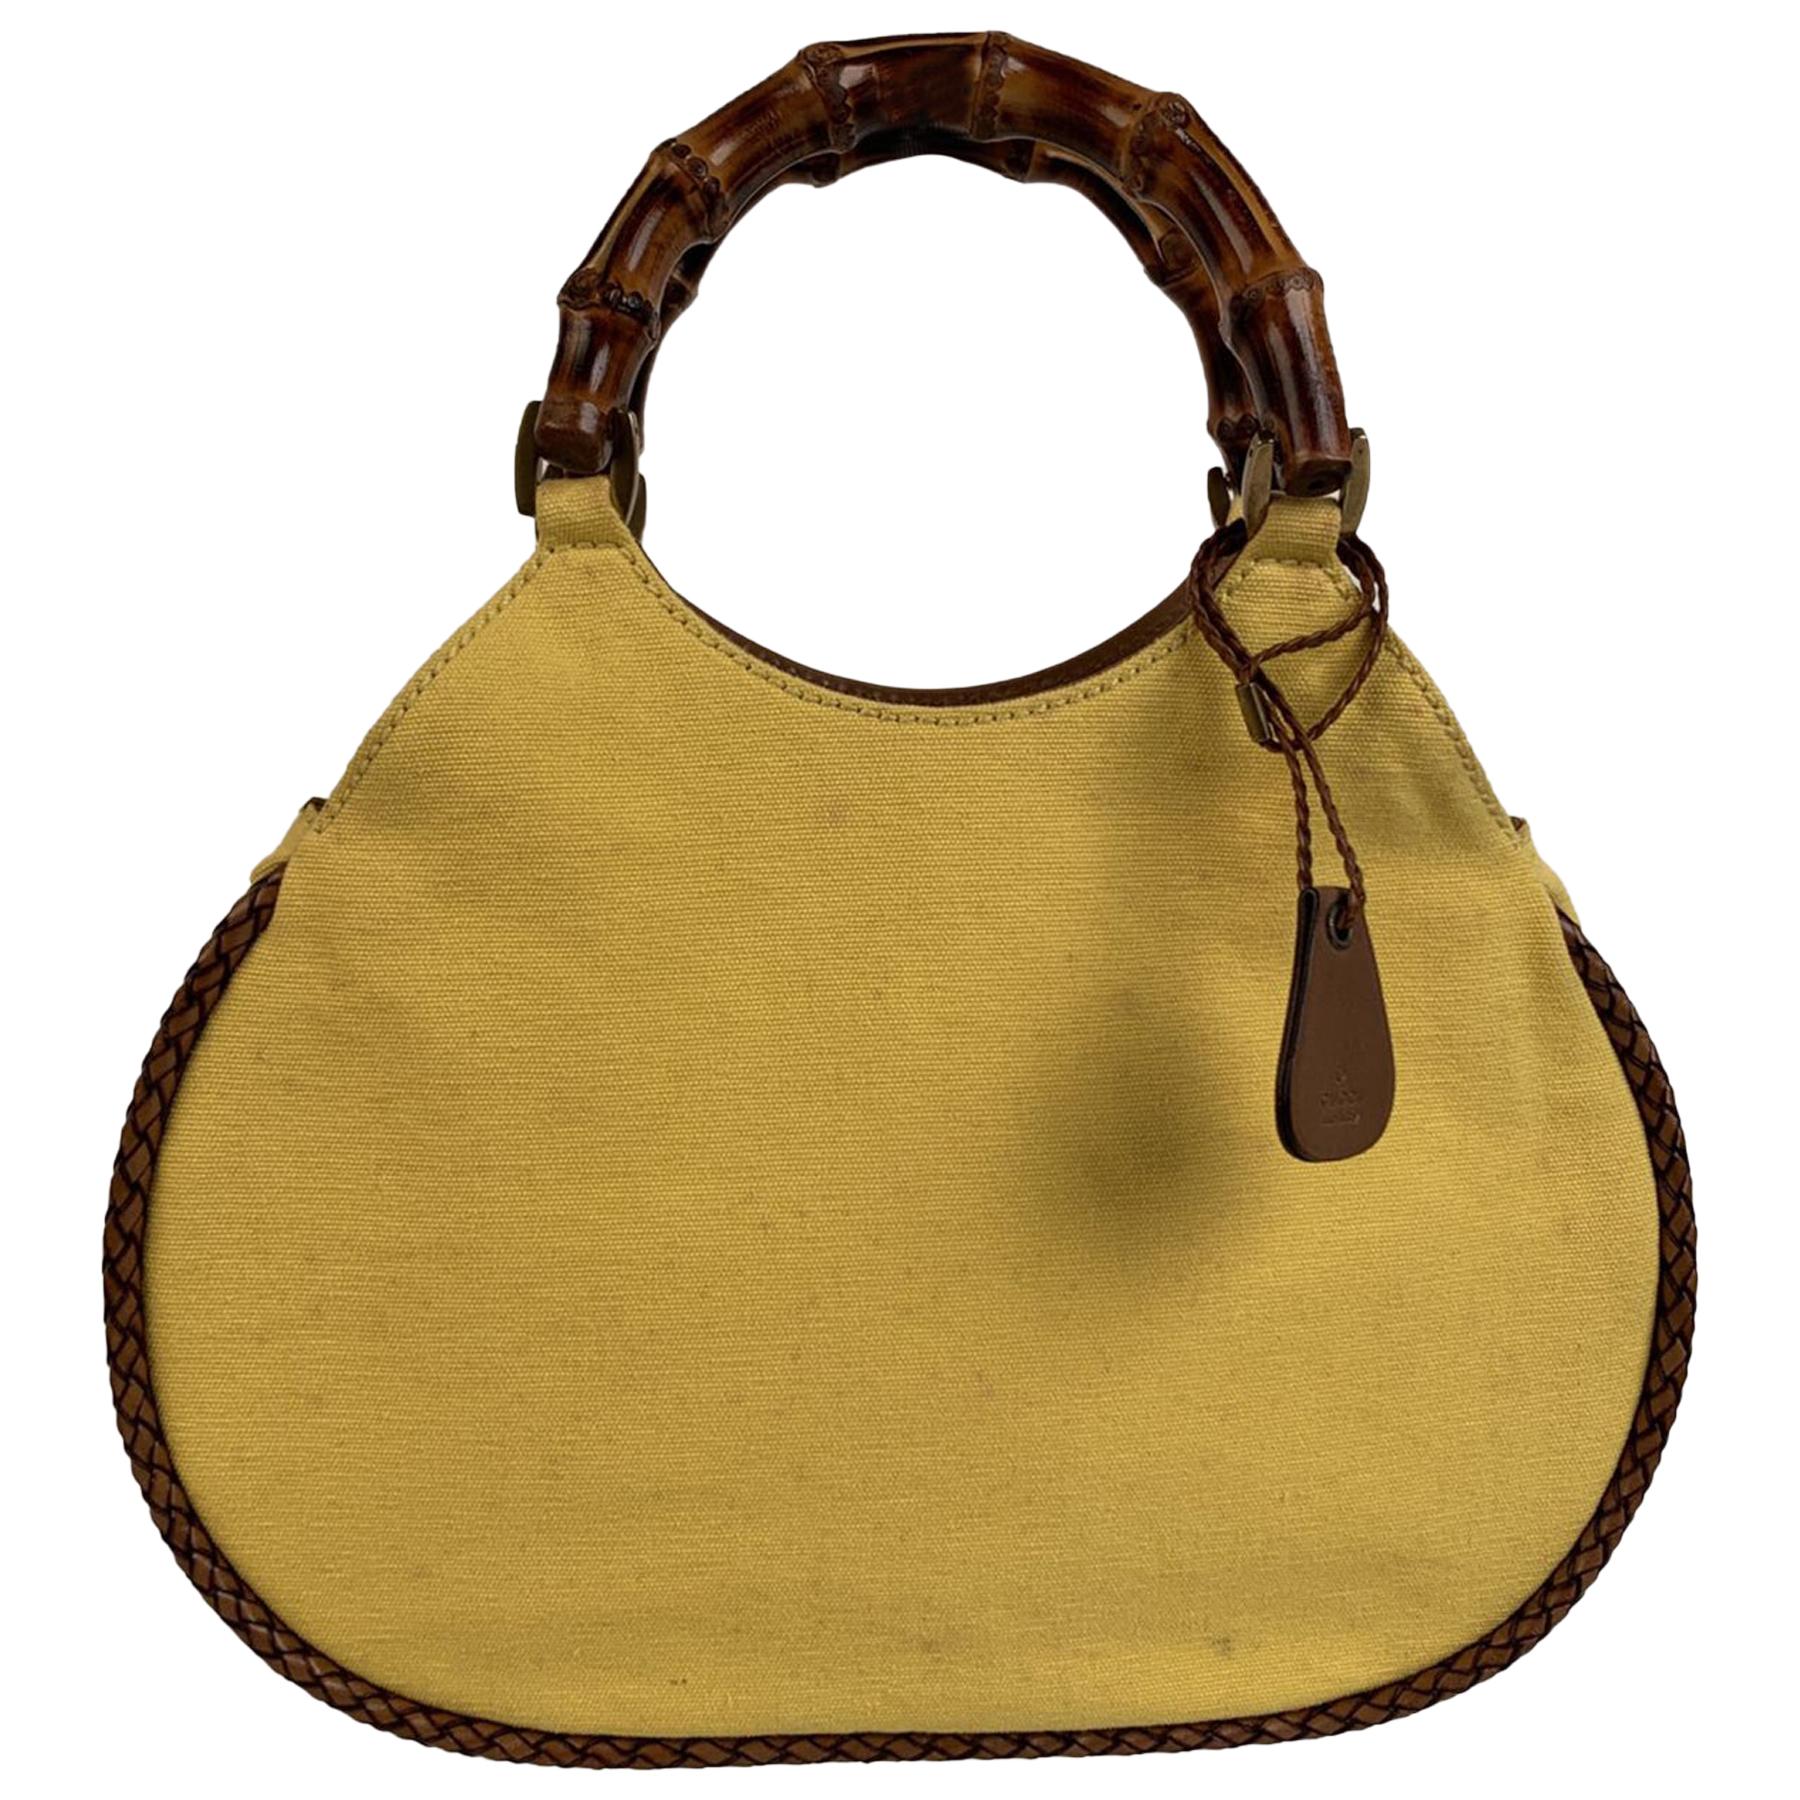 Gucci Yellow Canvas Small Bamboo Handles Tote Bag Handbag